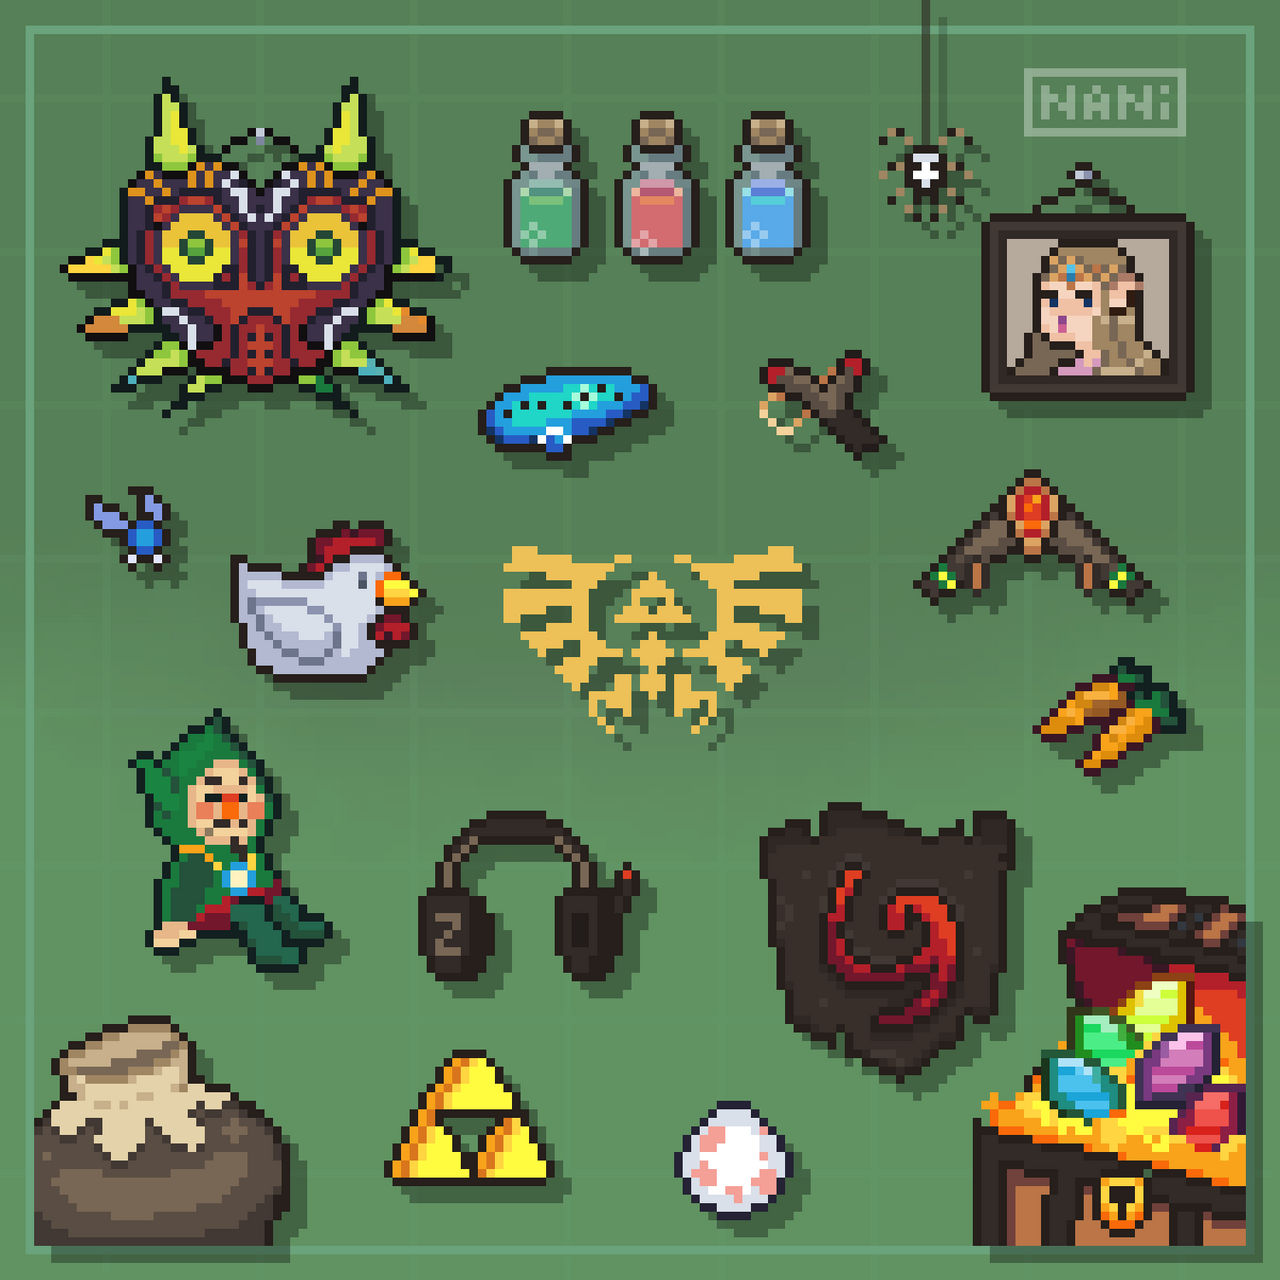 Zelda items by Nanibananyy on DeviantArt